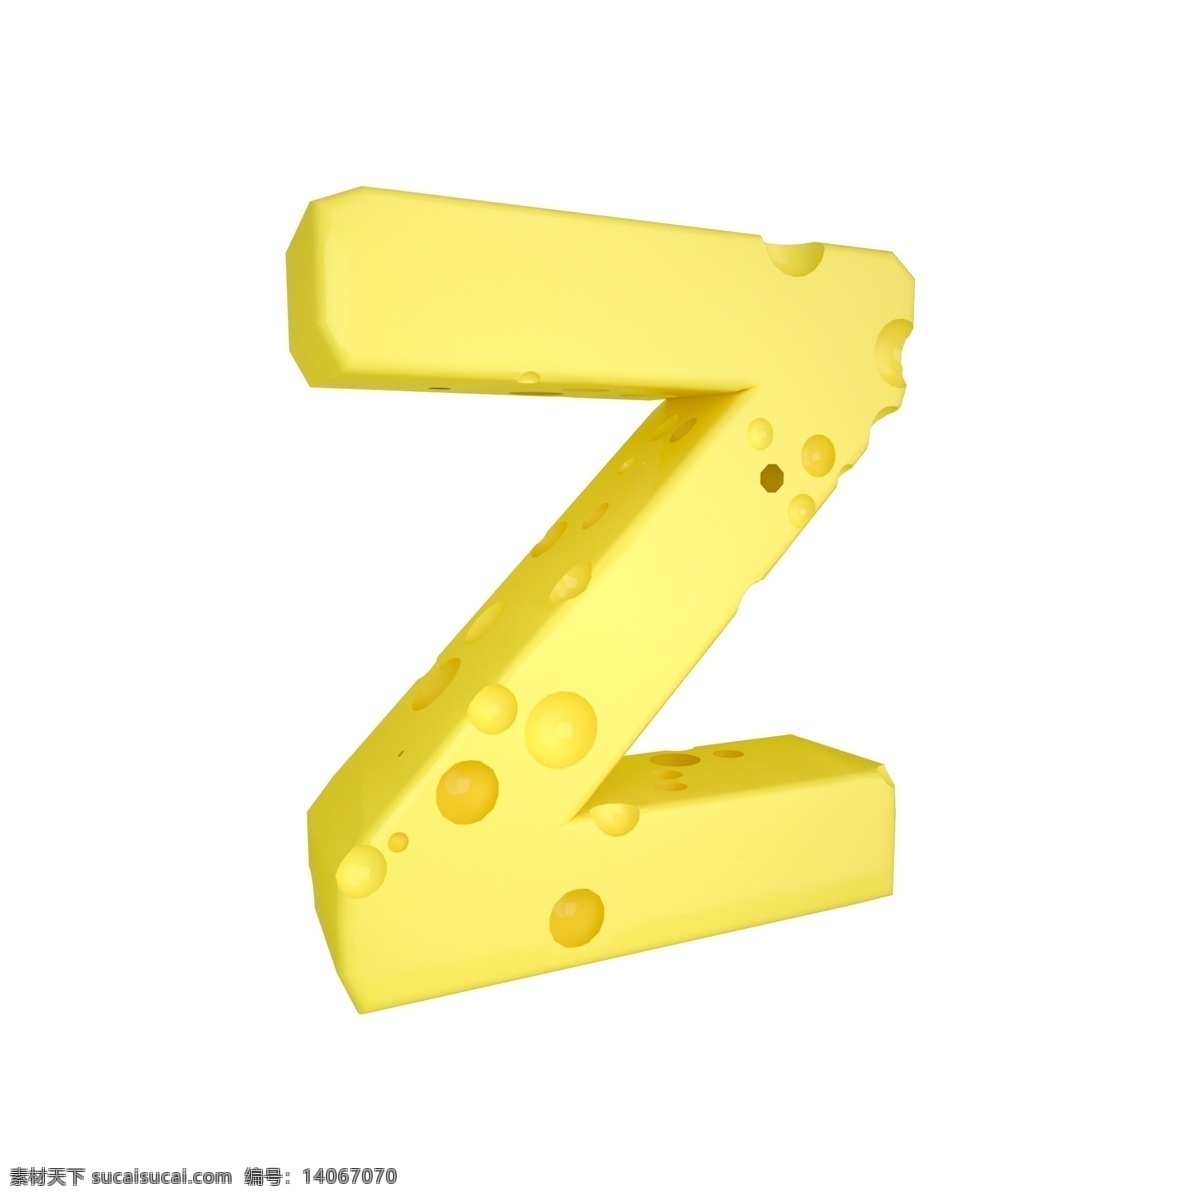 c4d 创意 奶酪 字母 z 装饰 3d 黄色 立体 食物 平面海报配图 电商淘宝装饰 可爱 柔和 字母z